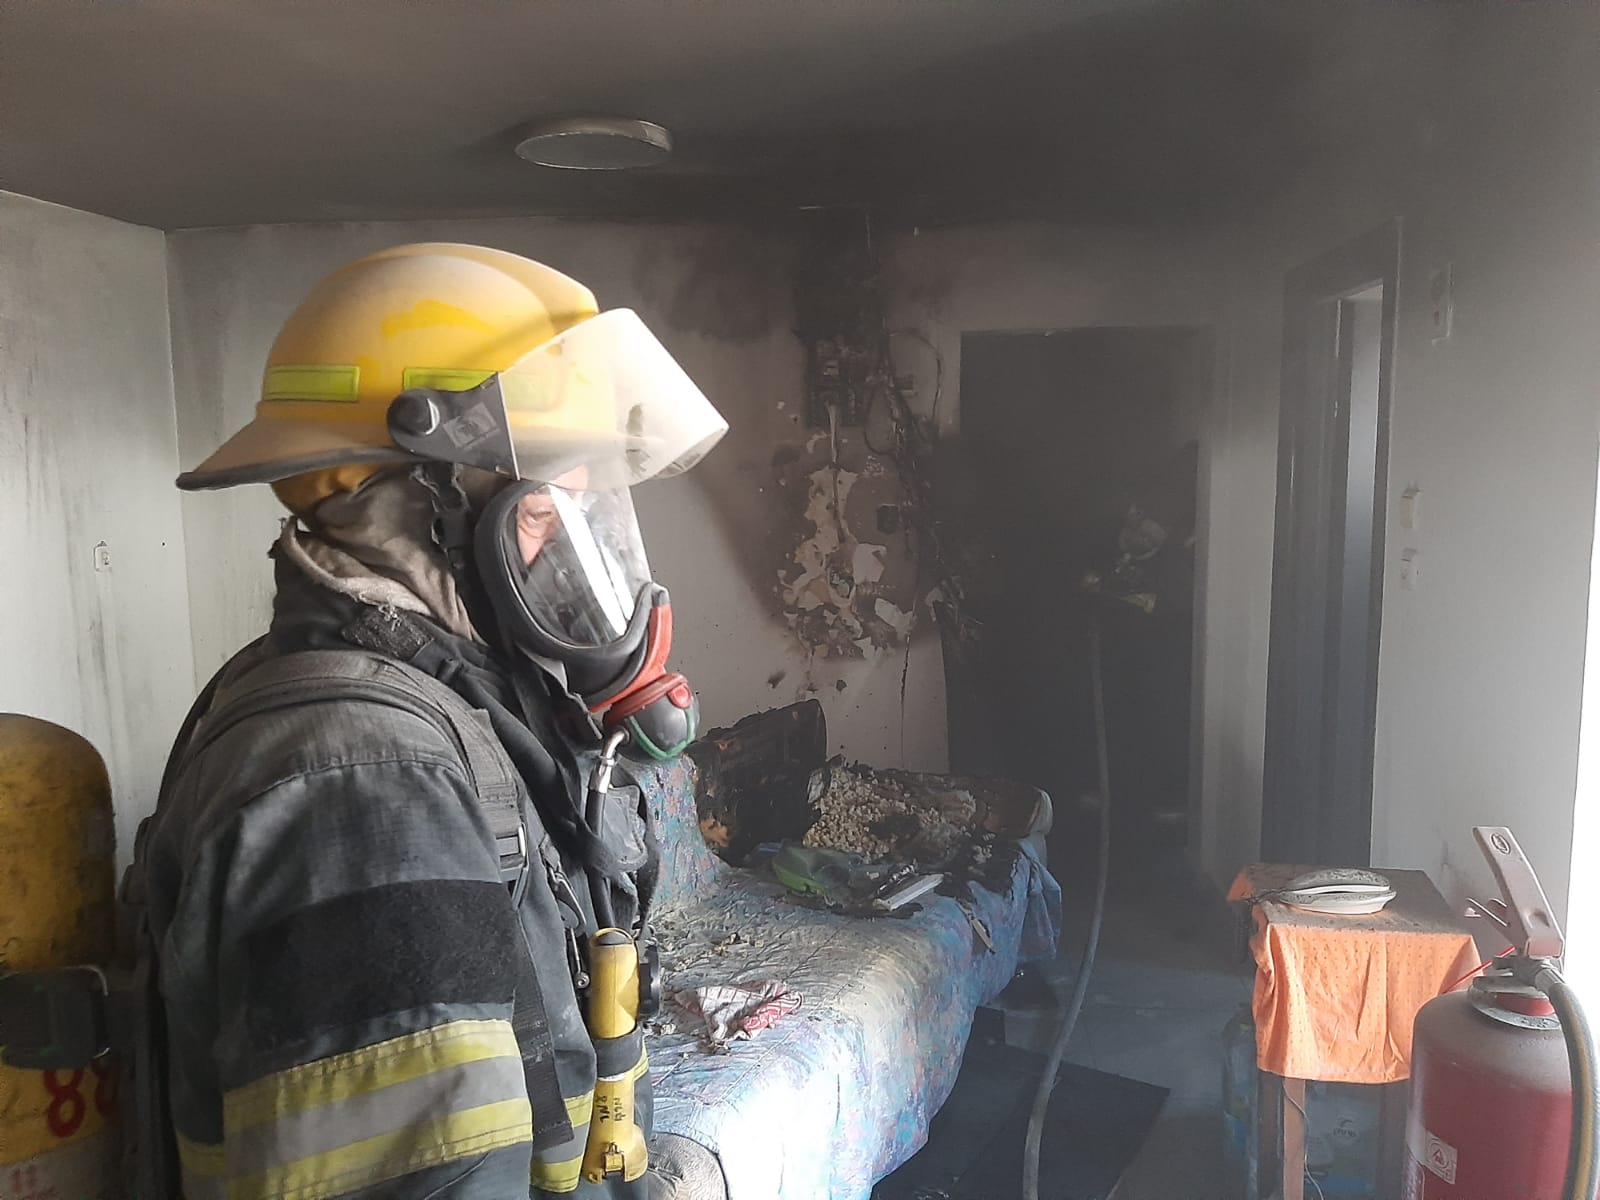 שריפה בדירה באשדוד. קרדיט: תיעוד מבצעי כבאות והצלה